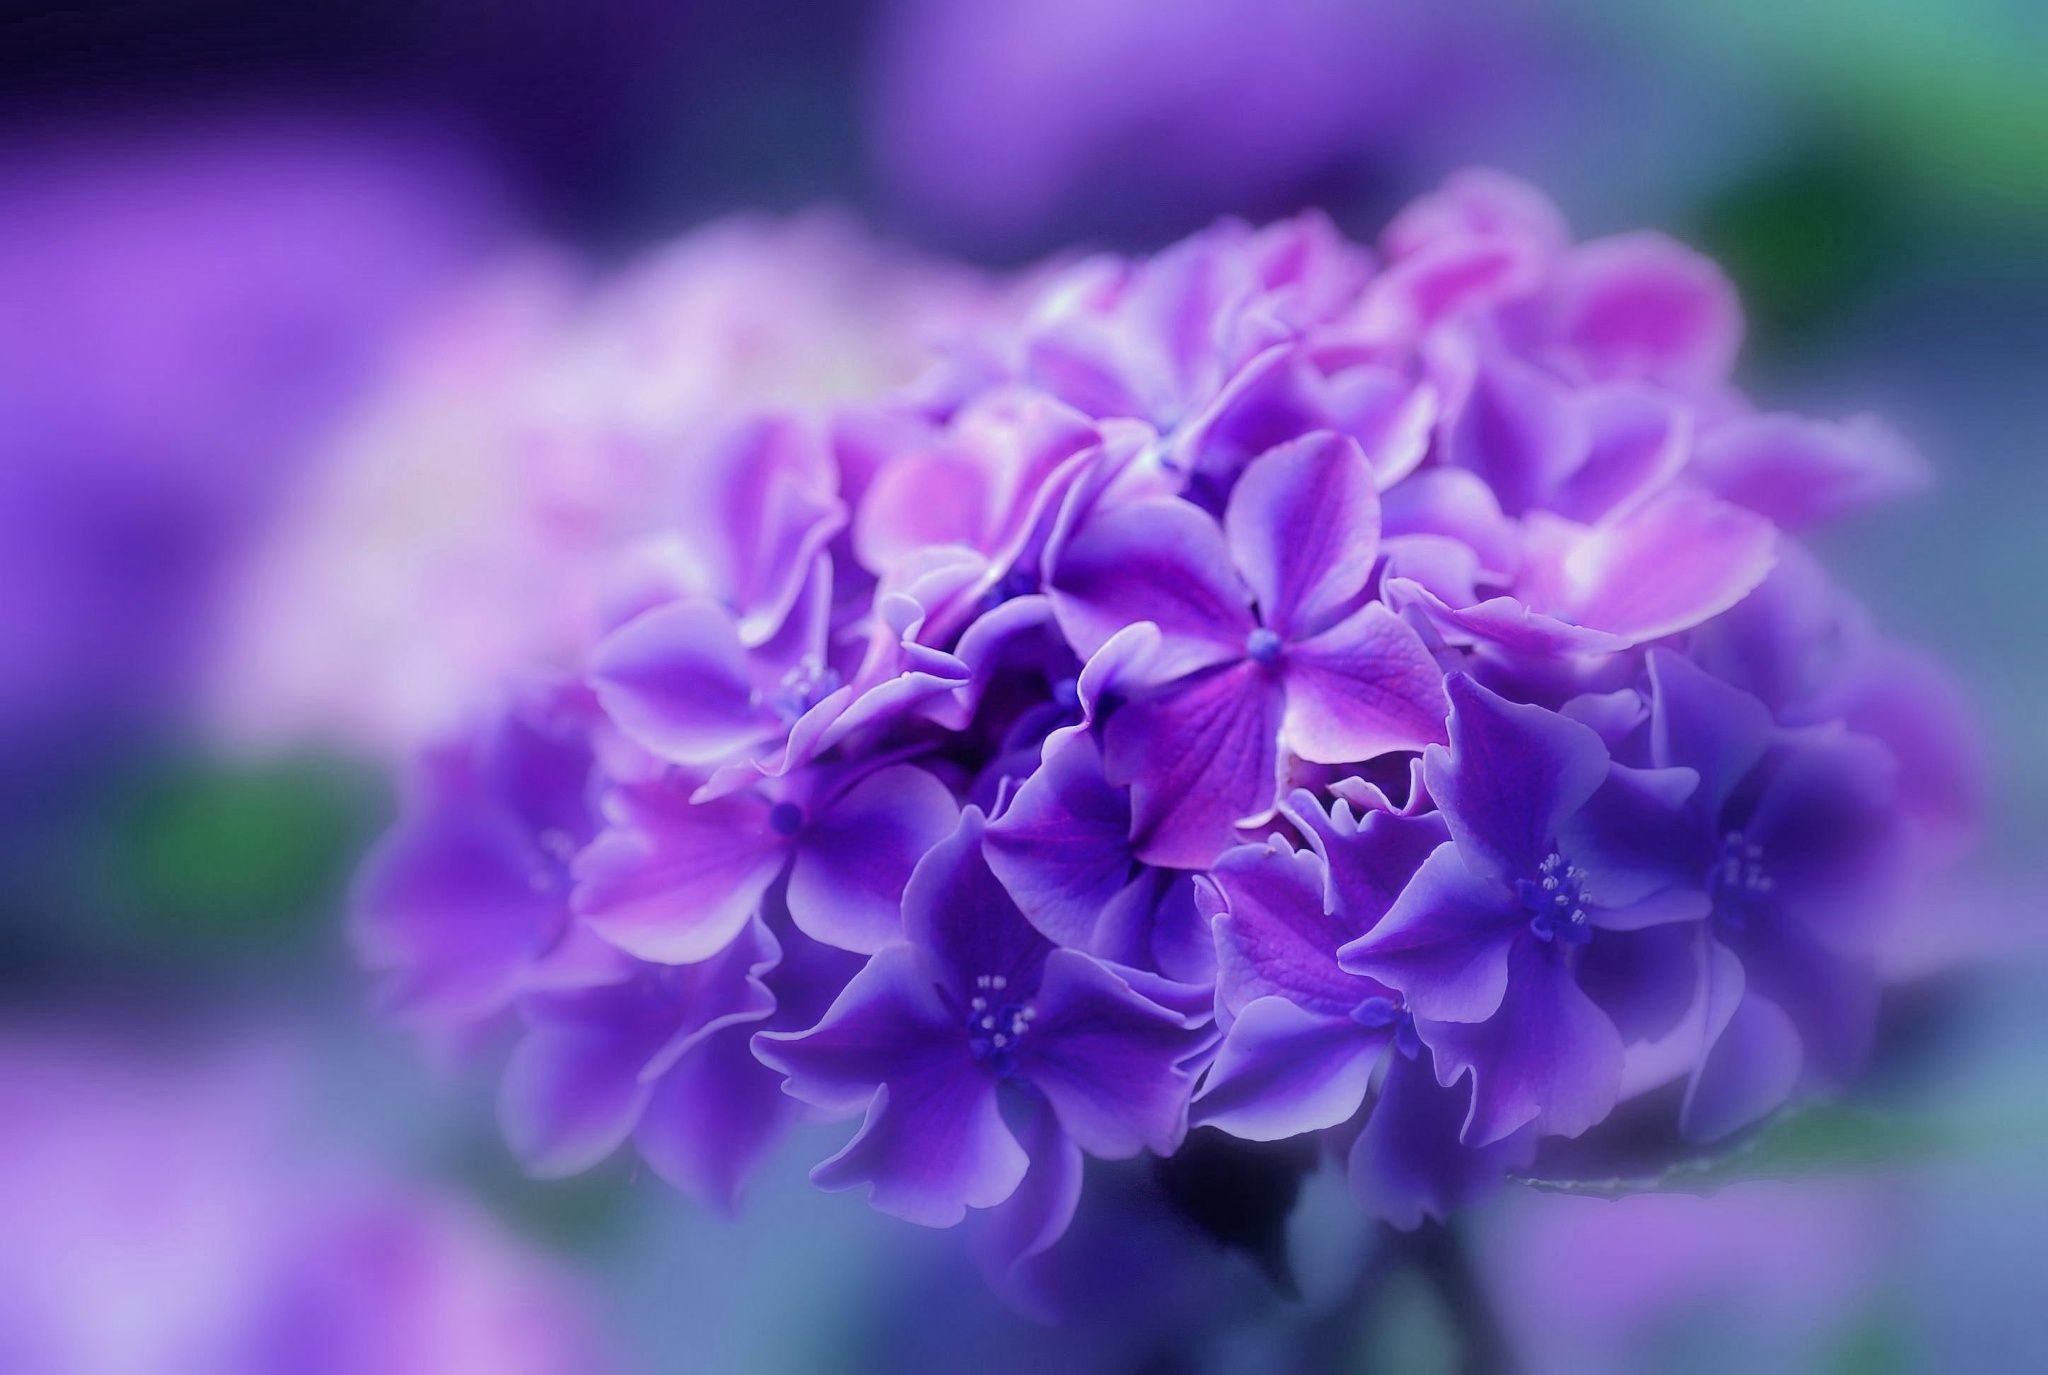 Violets images